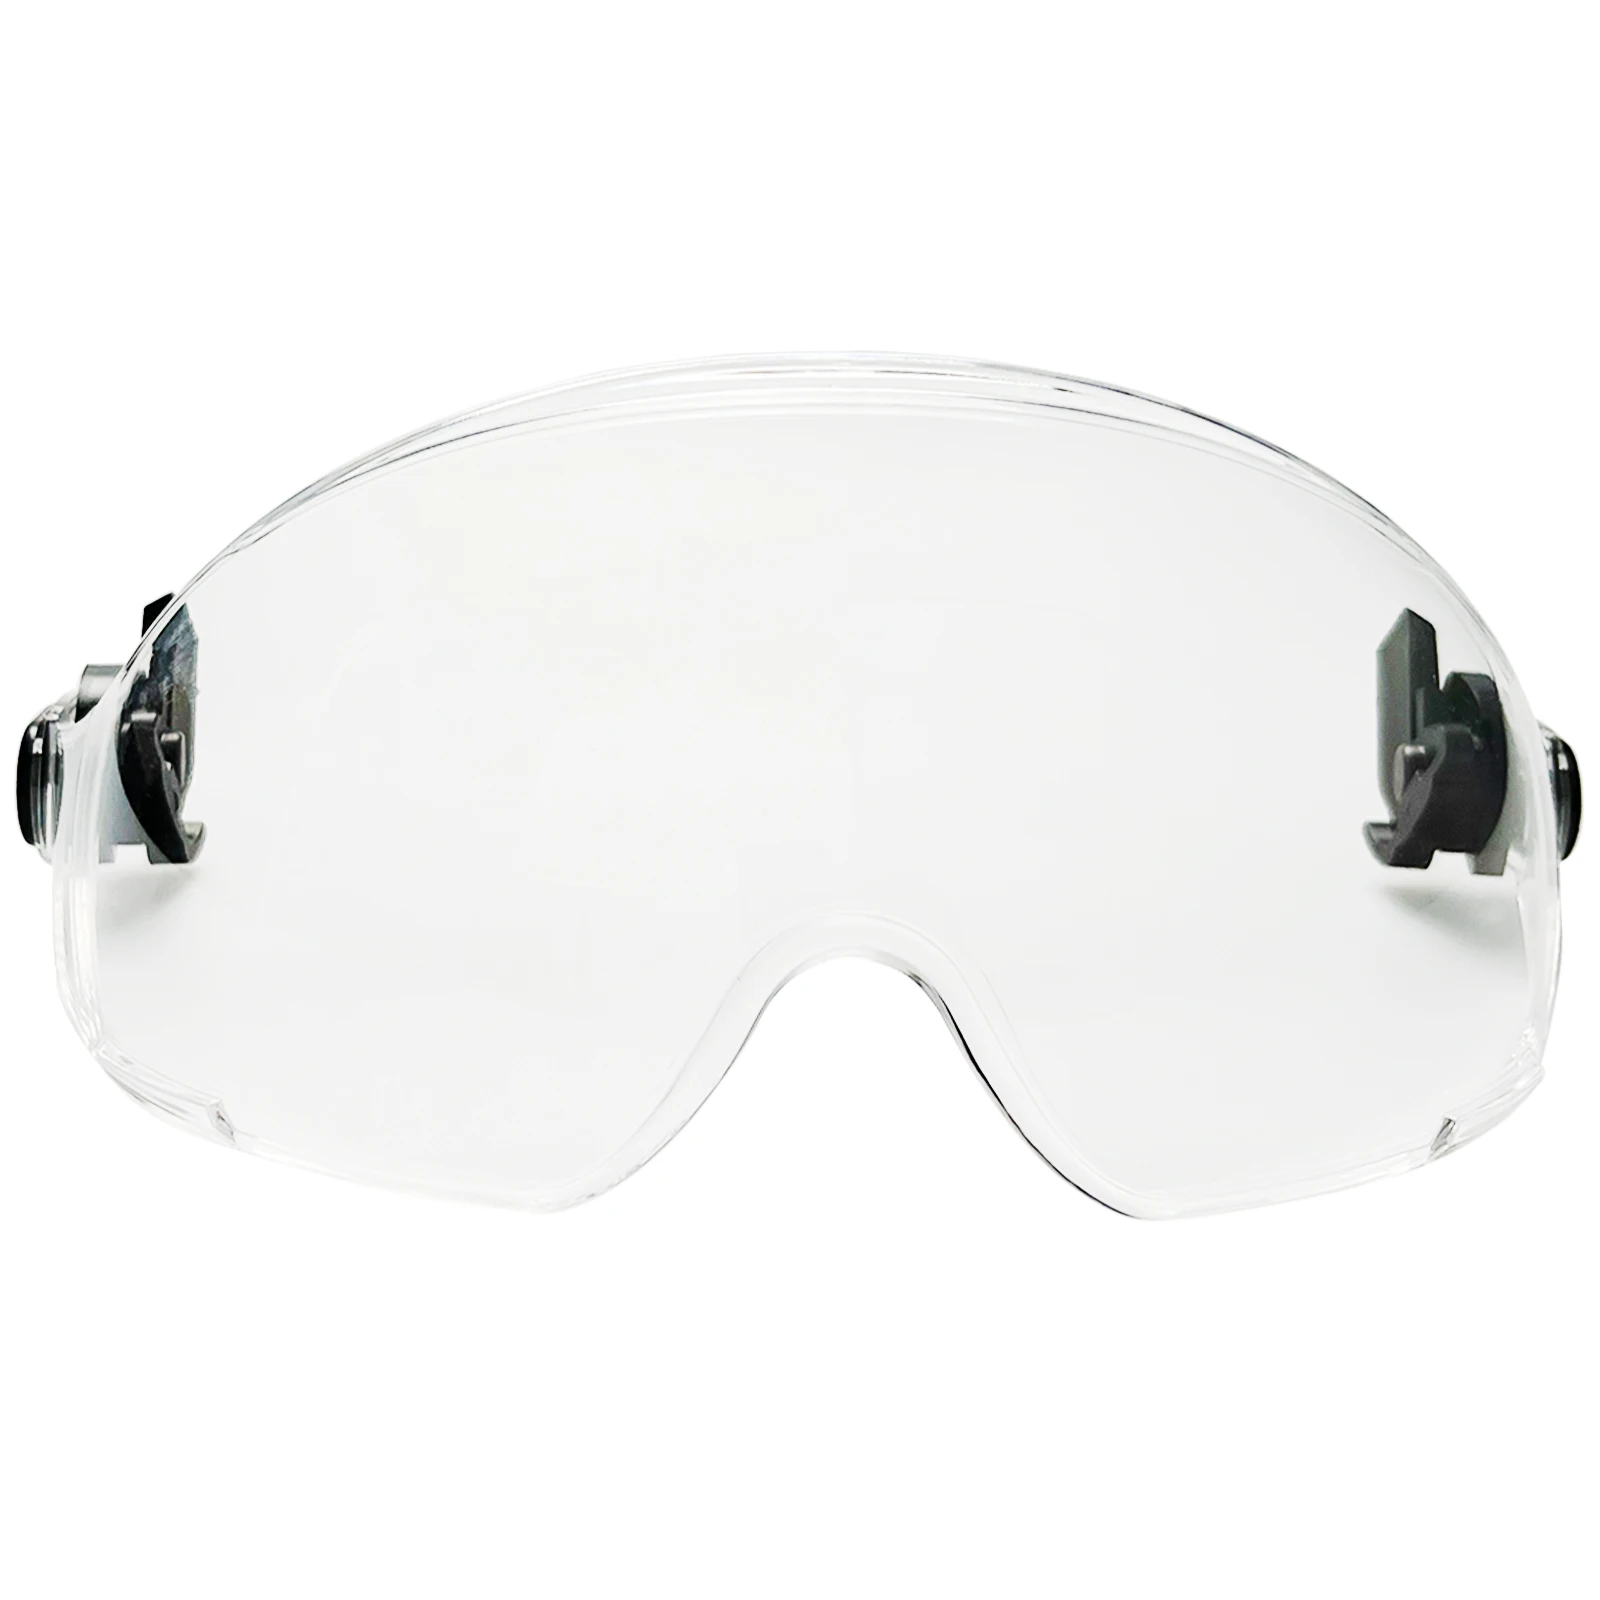 Защитный козырек CE, Защитные очки для ПК, Тип шлема, Используется Вместе С Каской EN166 ANSI Z87.1 Для защиты глаз, Промышленная Работа